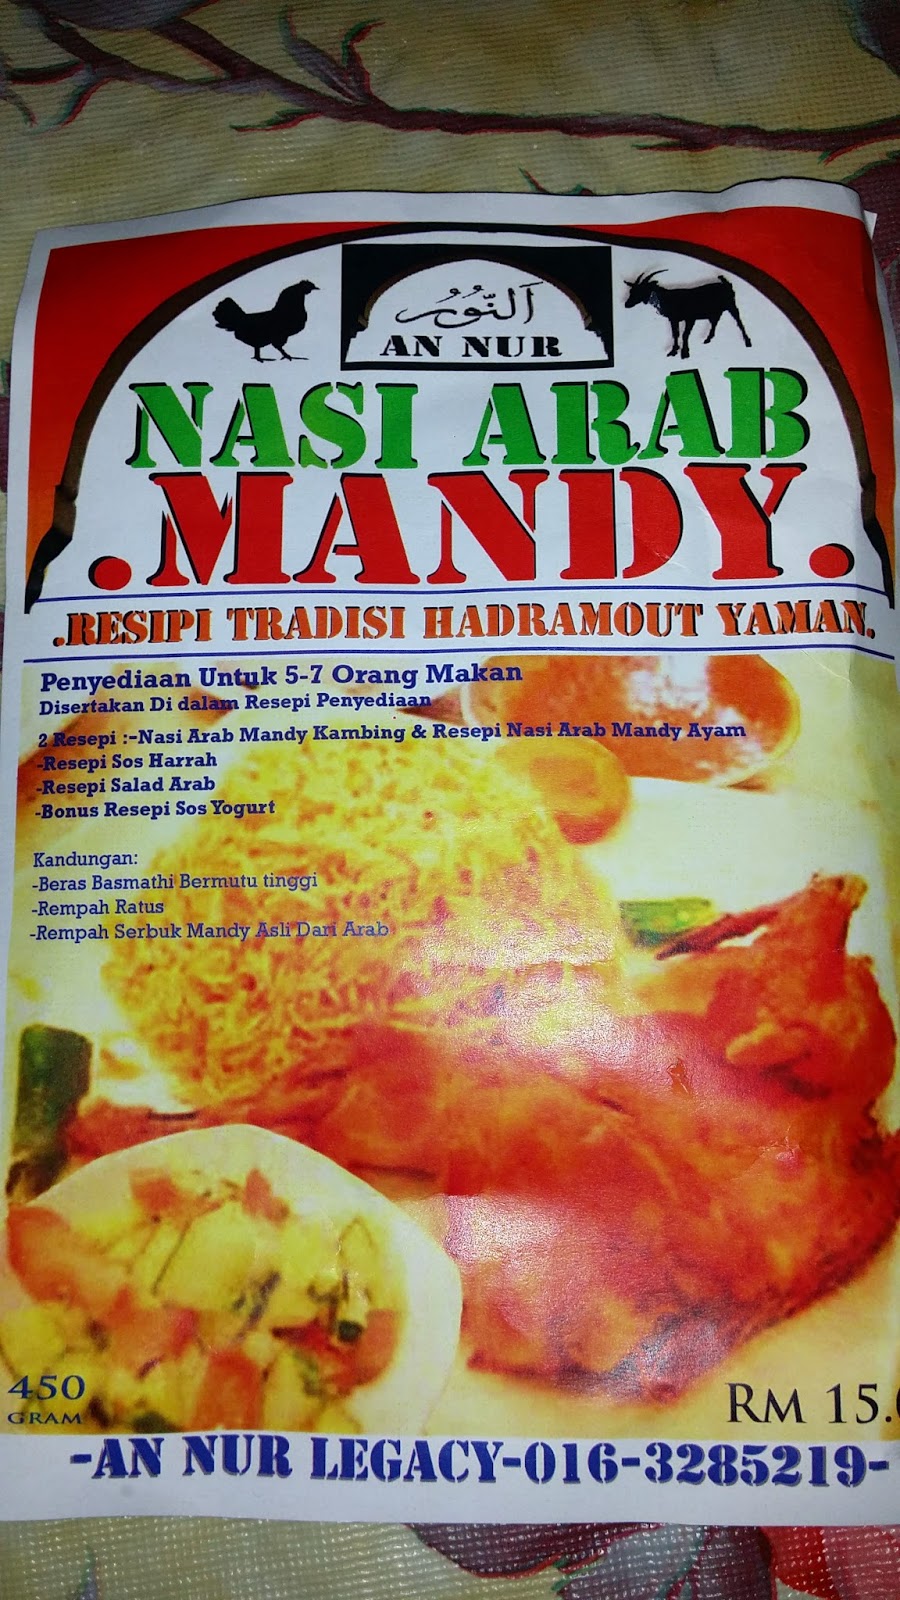 Arab mandy nasi kambing resepi Resepi Nasi